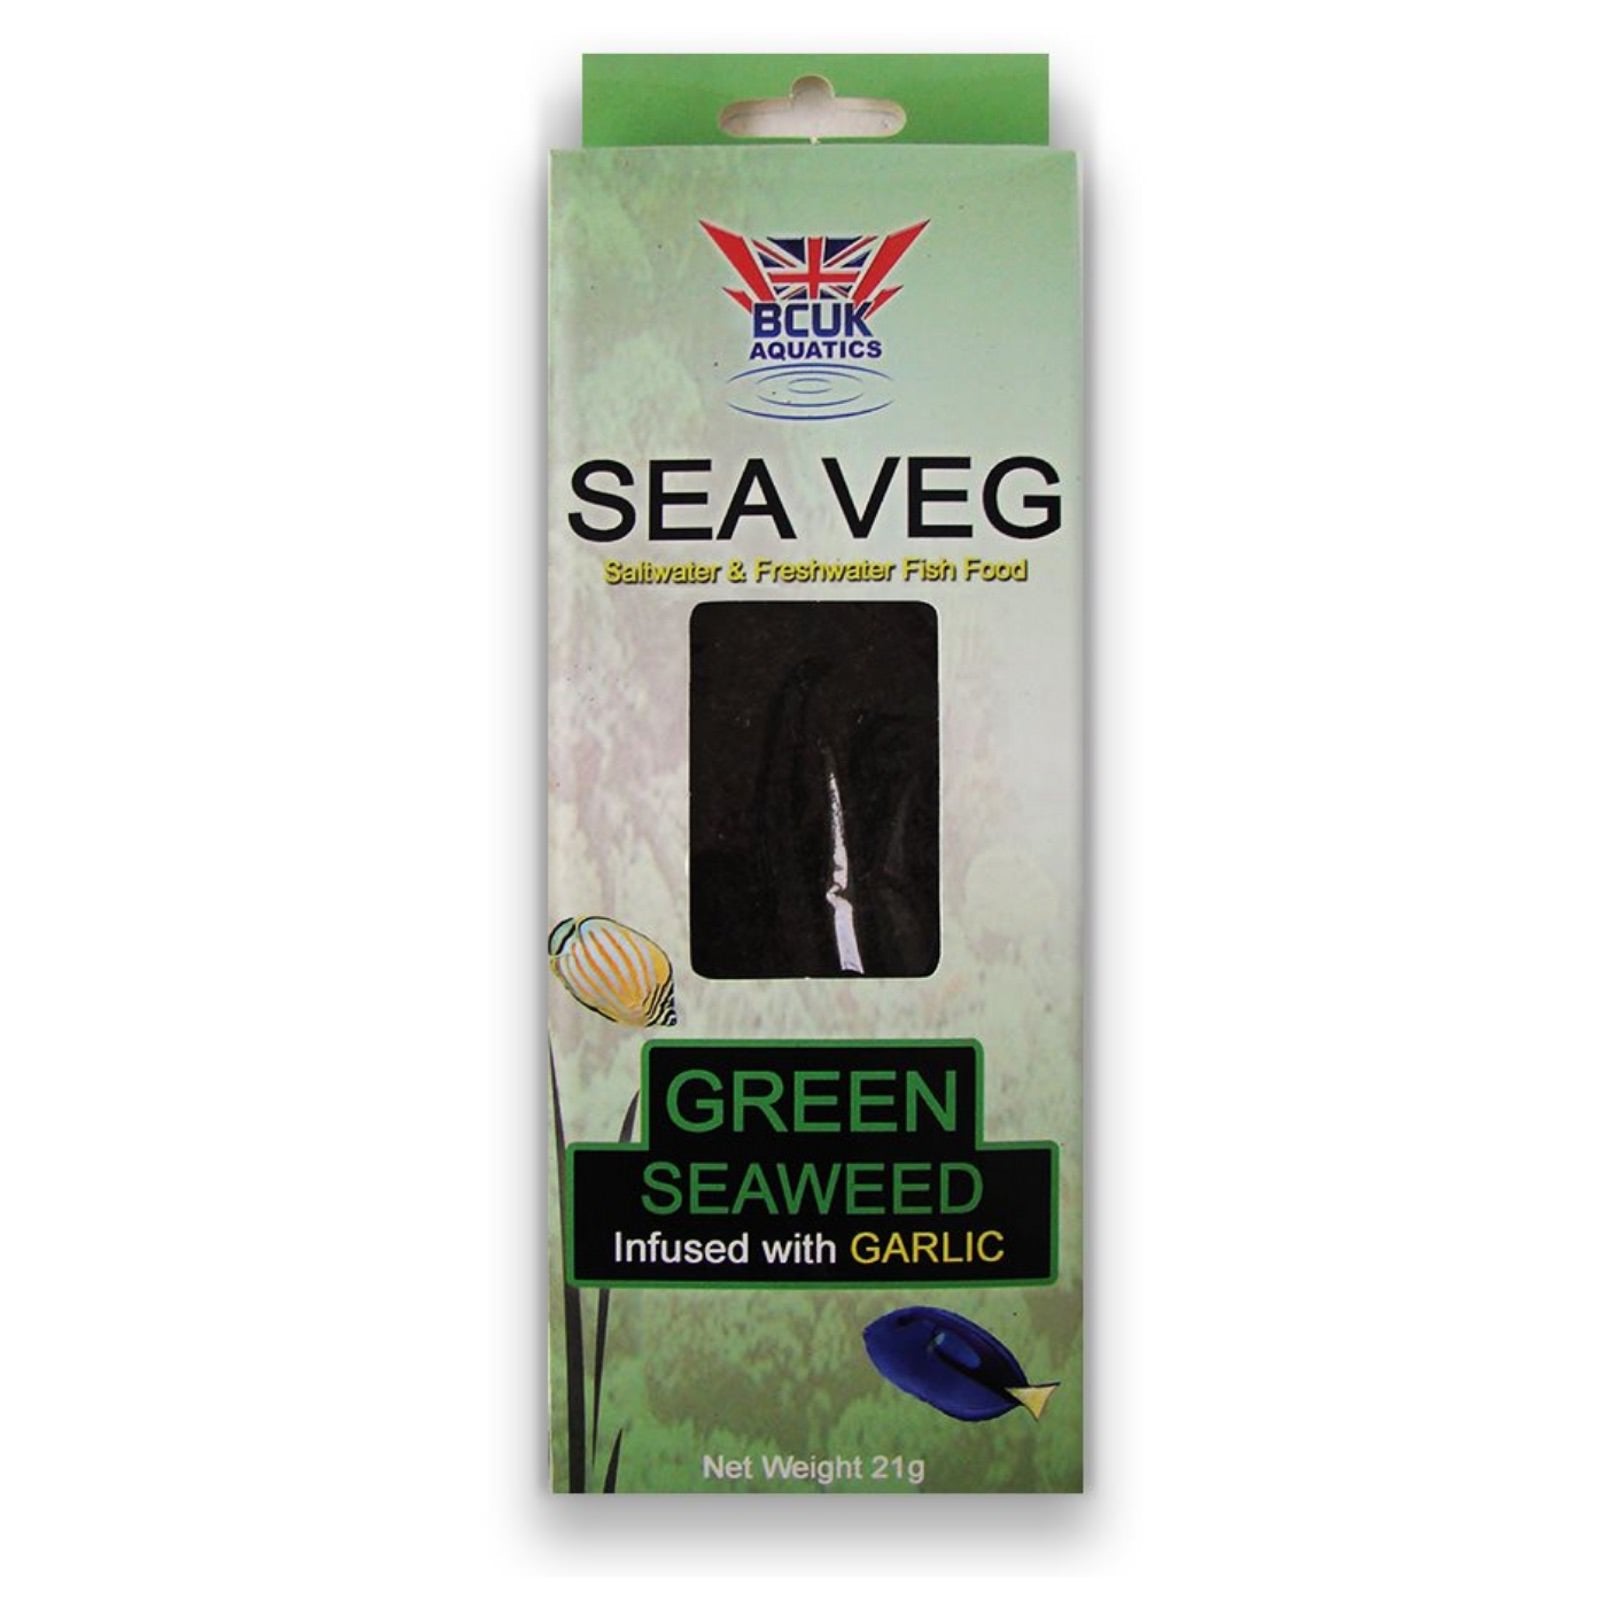 Sea Veg - Green Seaweed with Garlic